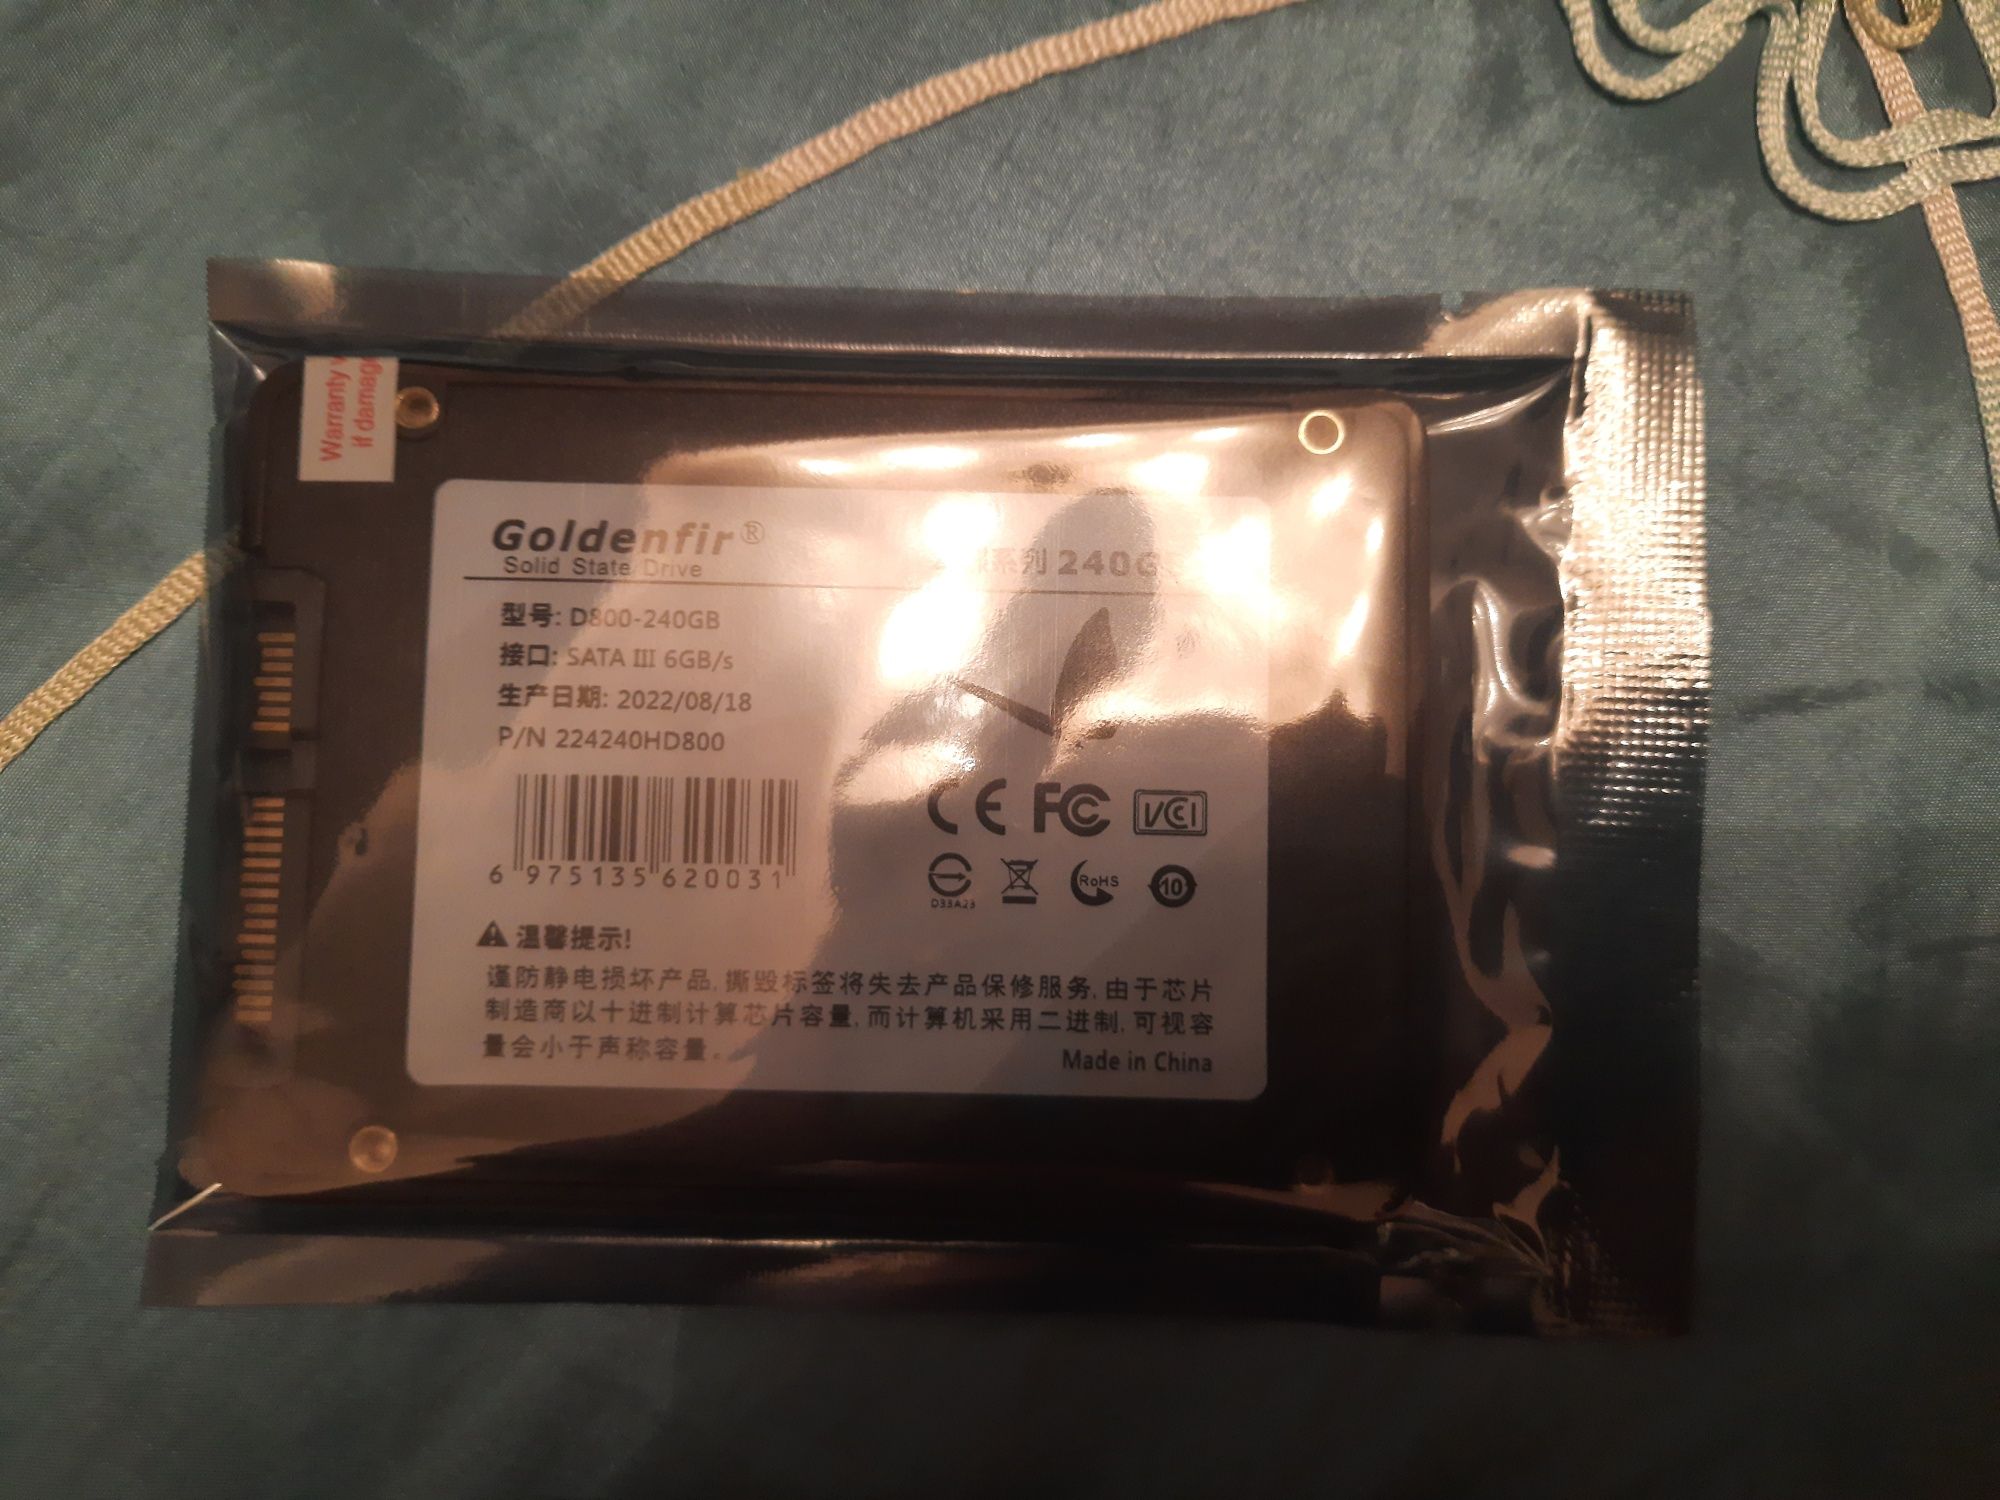 SSD GOLDENFIR 240 gb новые не распакованные.
Скорость чтения 270-580Mb